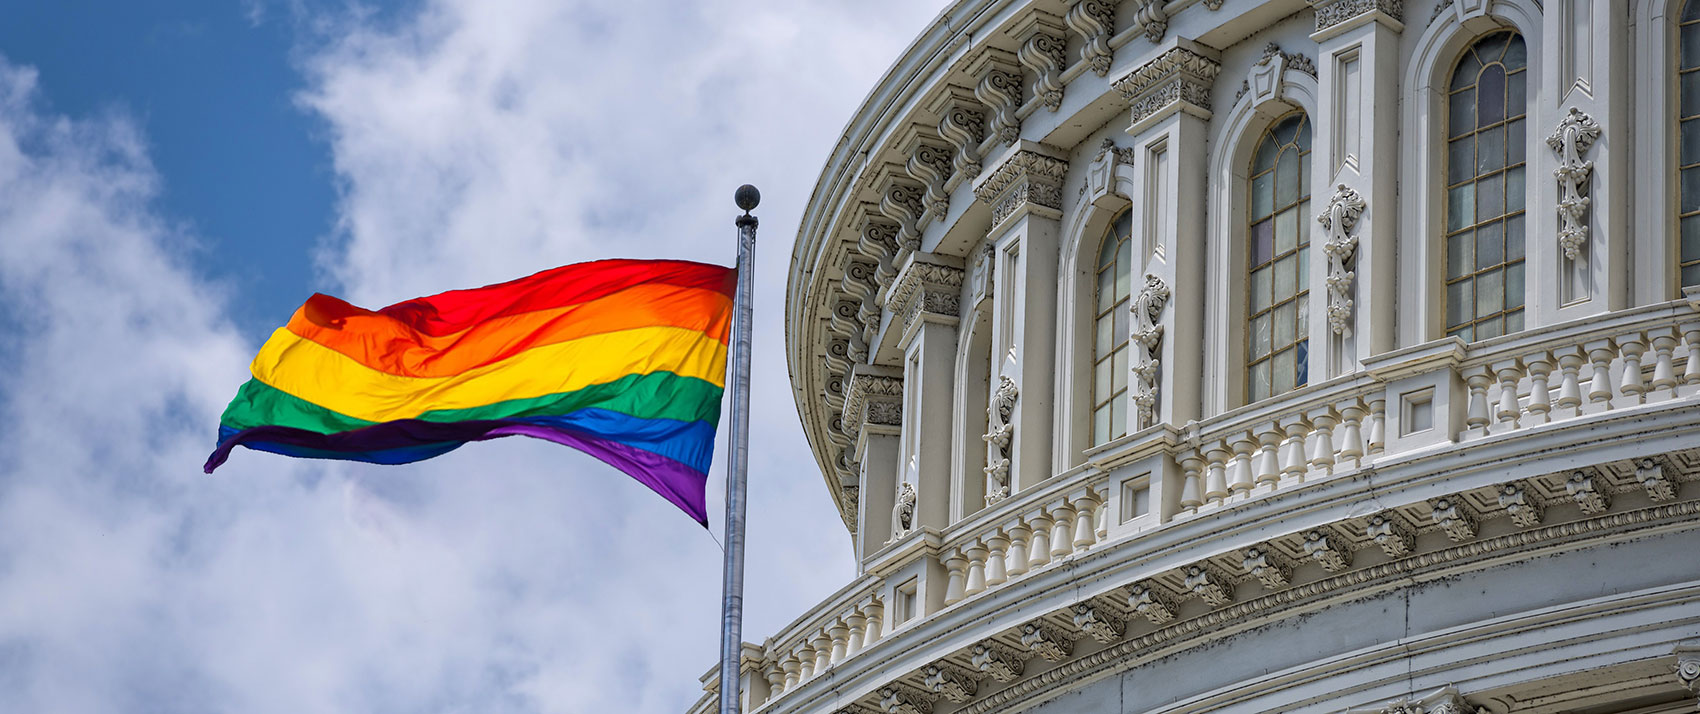 capitol building wiht pride flag